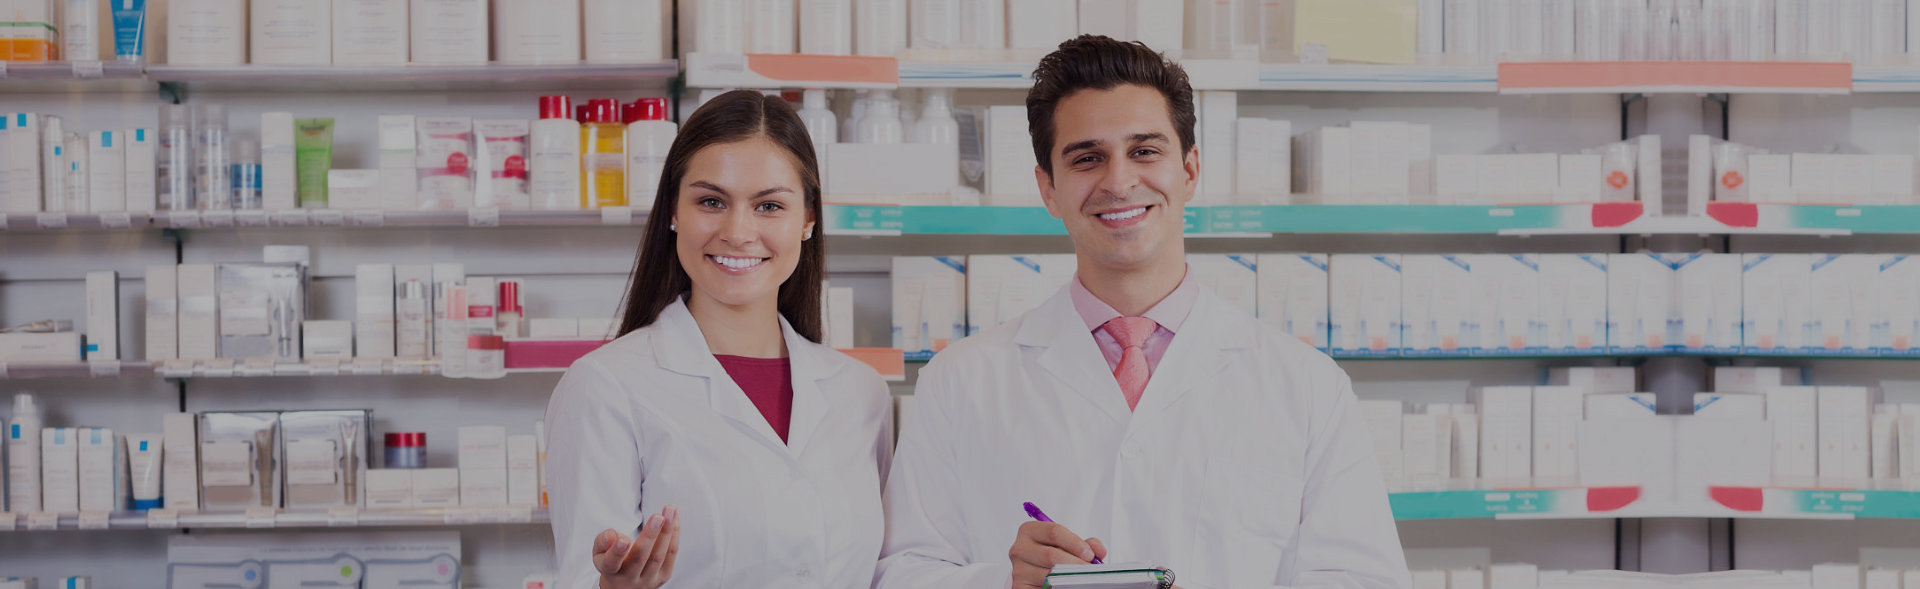 Male and female pharmacist